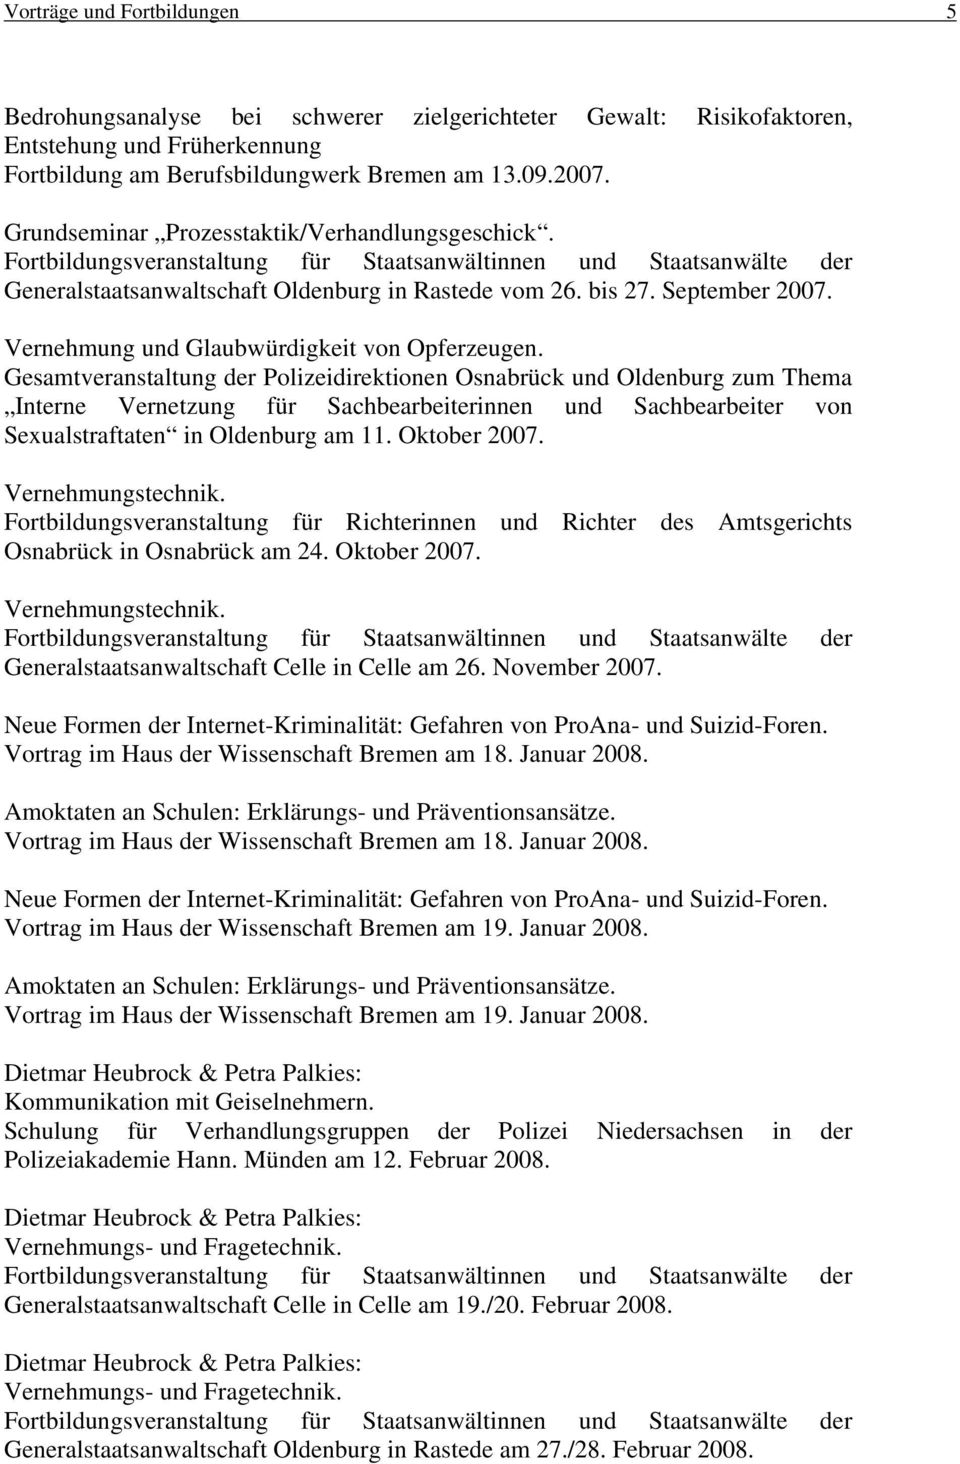 Gesamtveranstaltung der Polizeidirektionen Osnabrück und Oldenburg zum Thema Interne Vernetzung für Sachbearbeiterinnen und Sachbearbeiter von Sexualstraftaten in Oldenburg am 11. Oktober 2007.